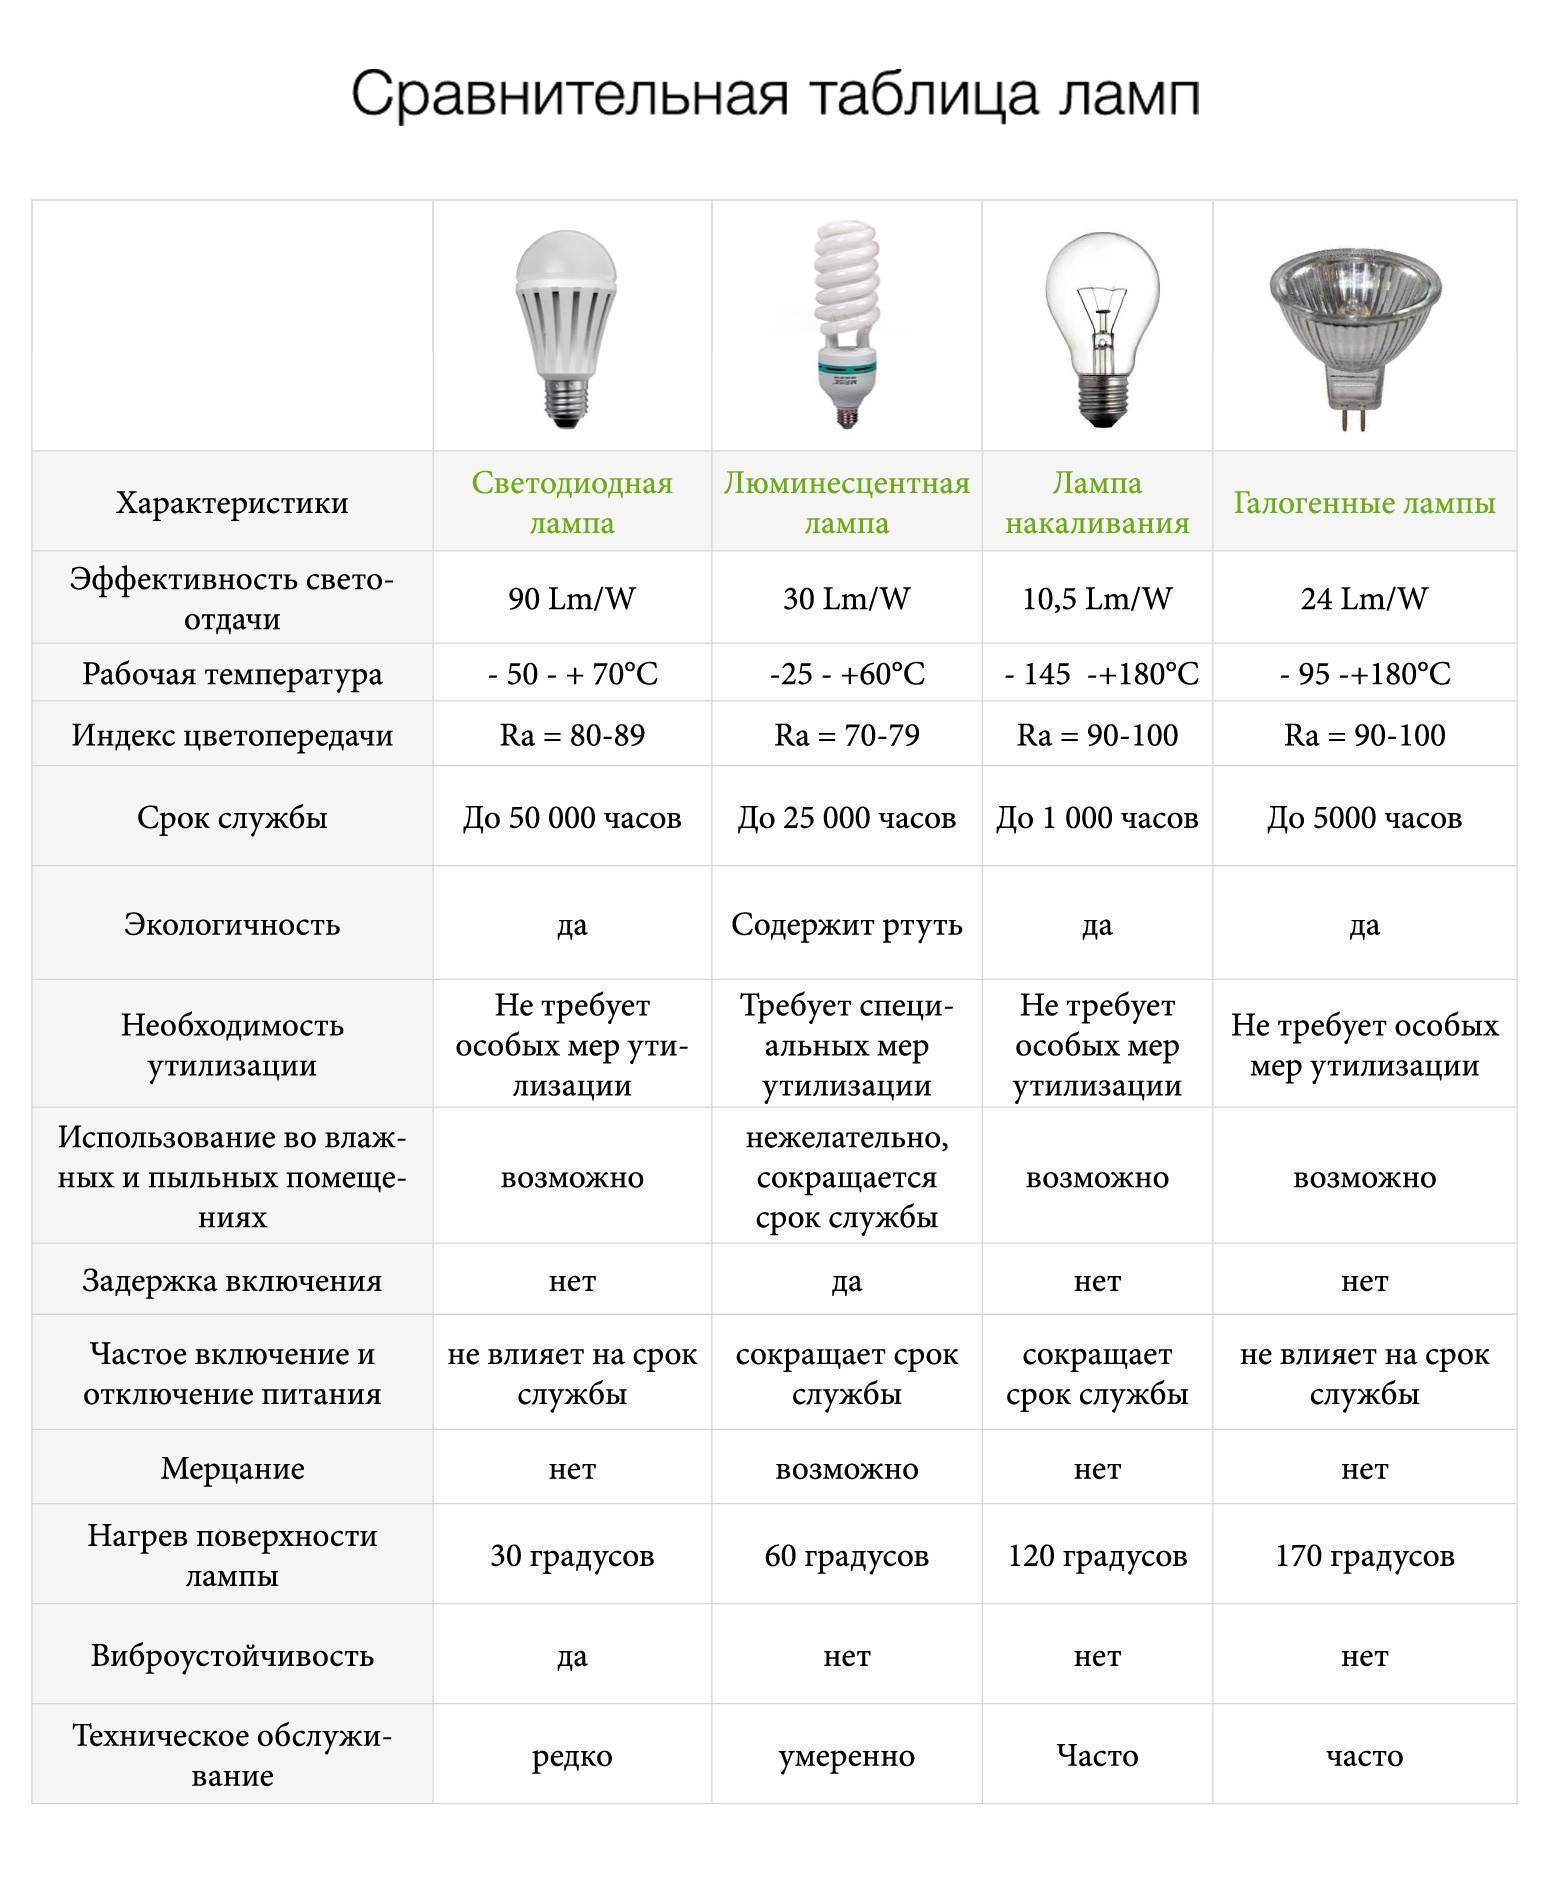 Энергосберегающие лампы: основные характеристики и разновидности